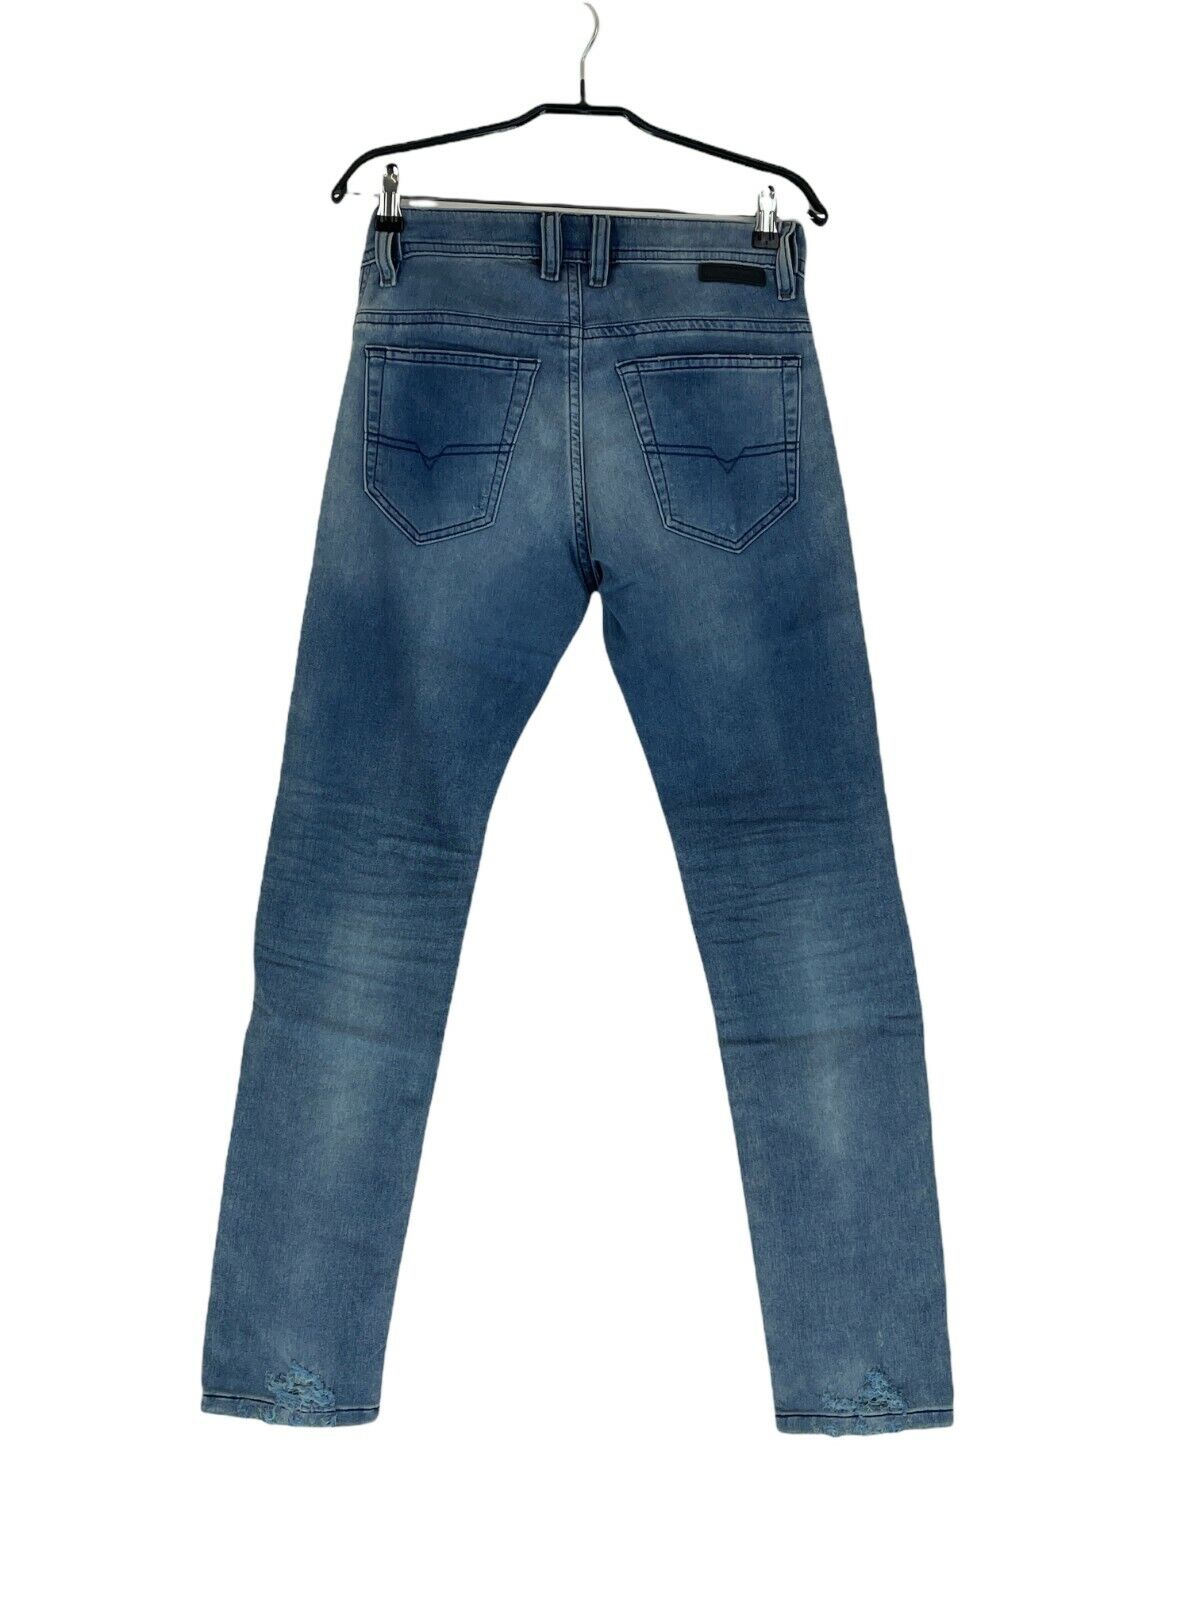 Diesel THOMMER CB-NE MEN Jogg jeans 00S8MK C69FC Size 28 GENUINE 